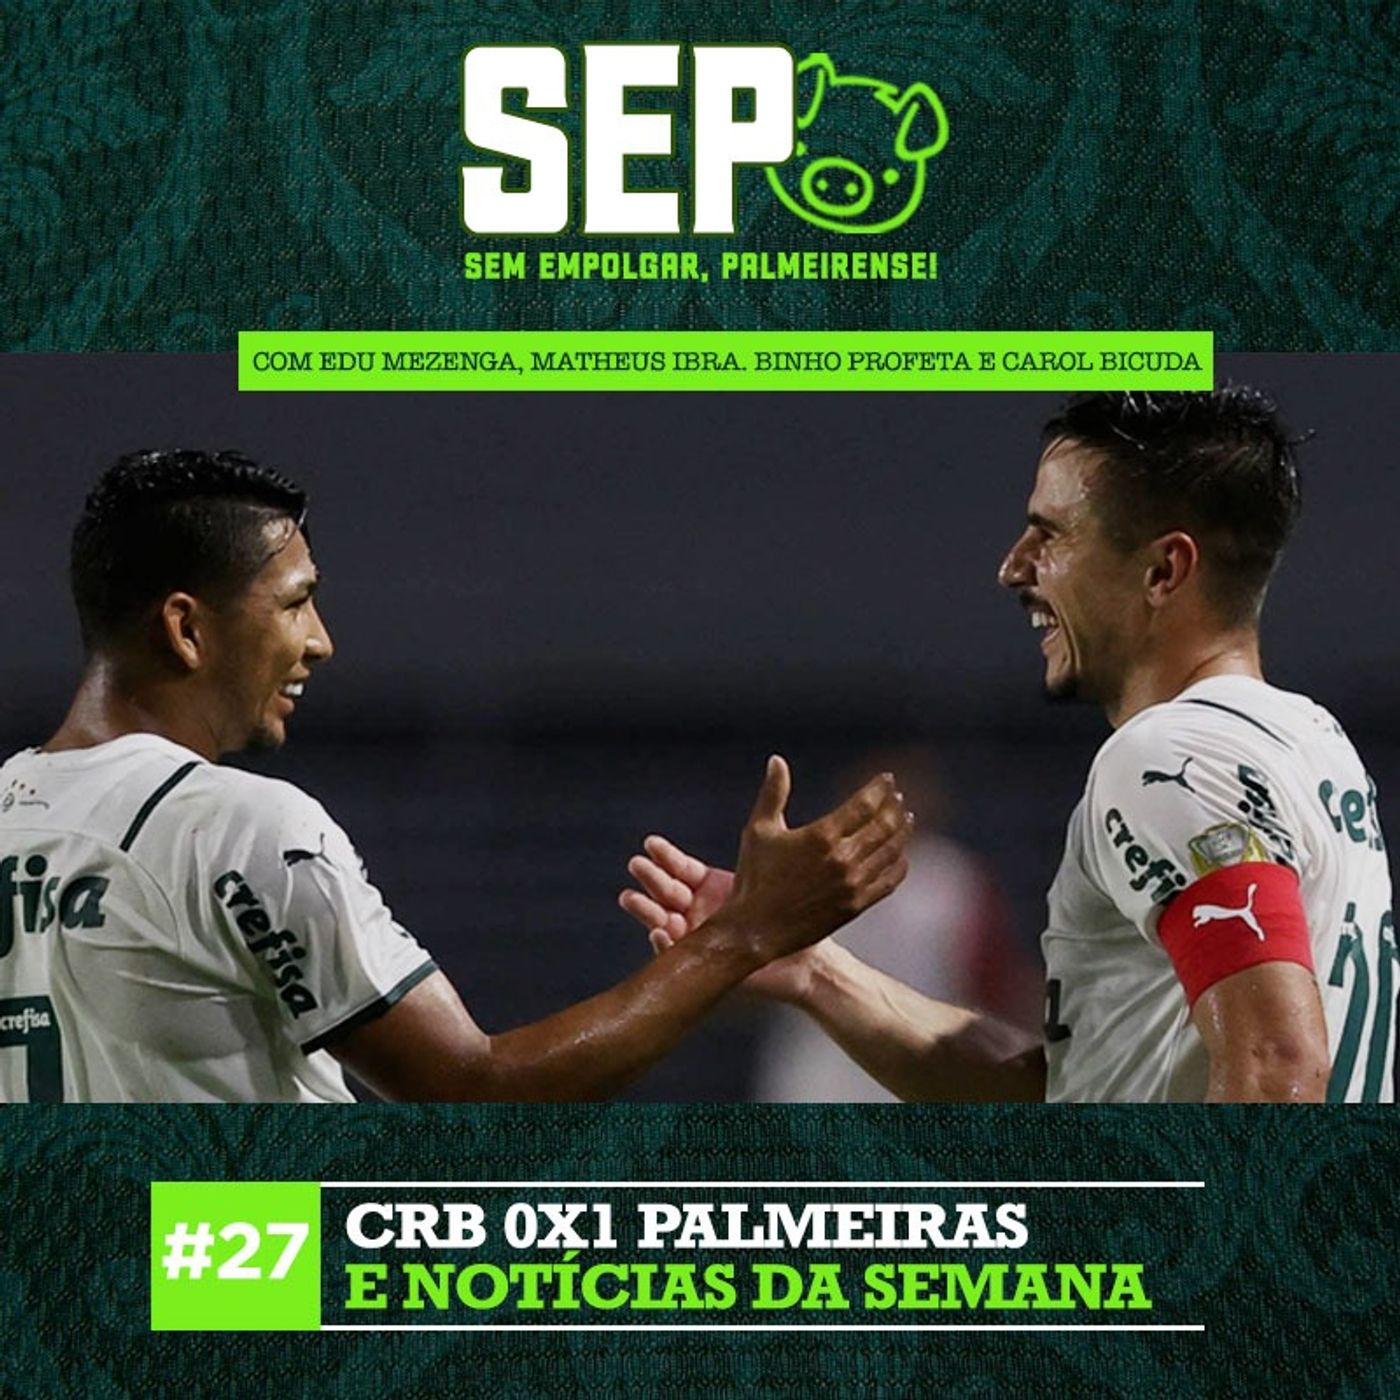 EP27: CRB 0x1 Palmeiras + notícias da semana